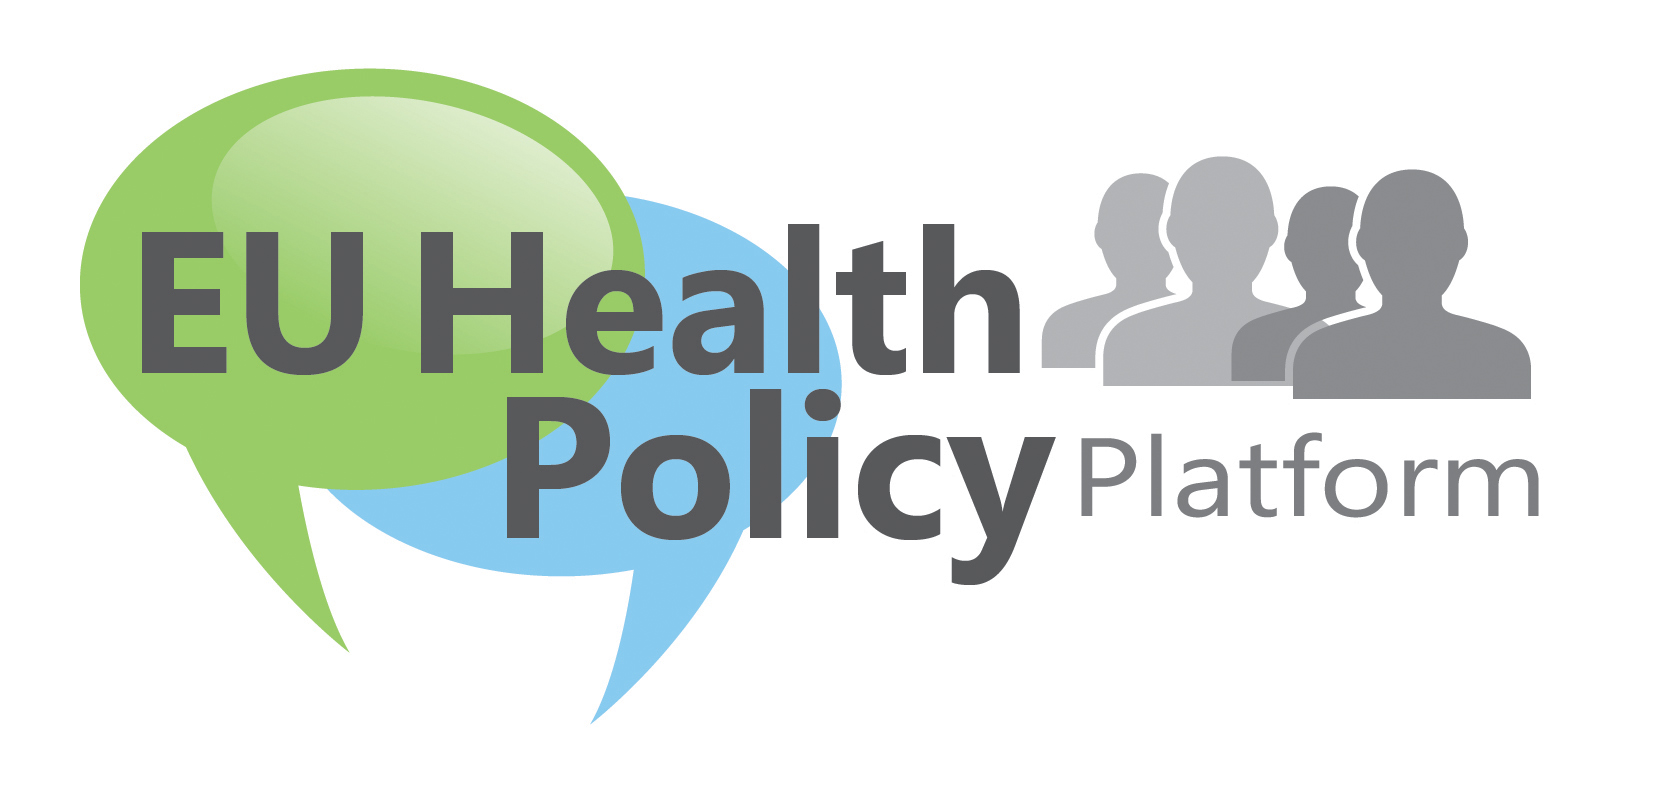 L’EU Health Policy Platform della Commissione organizza quattro eventi di Formazione e una sessione informativa.